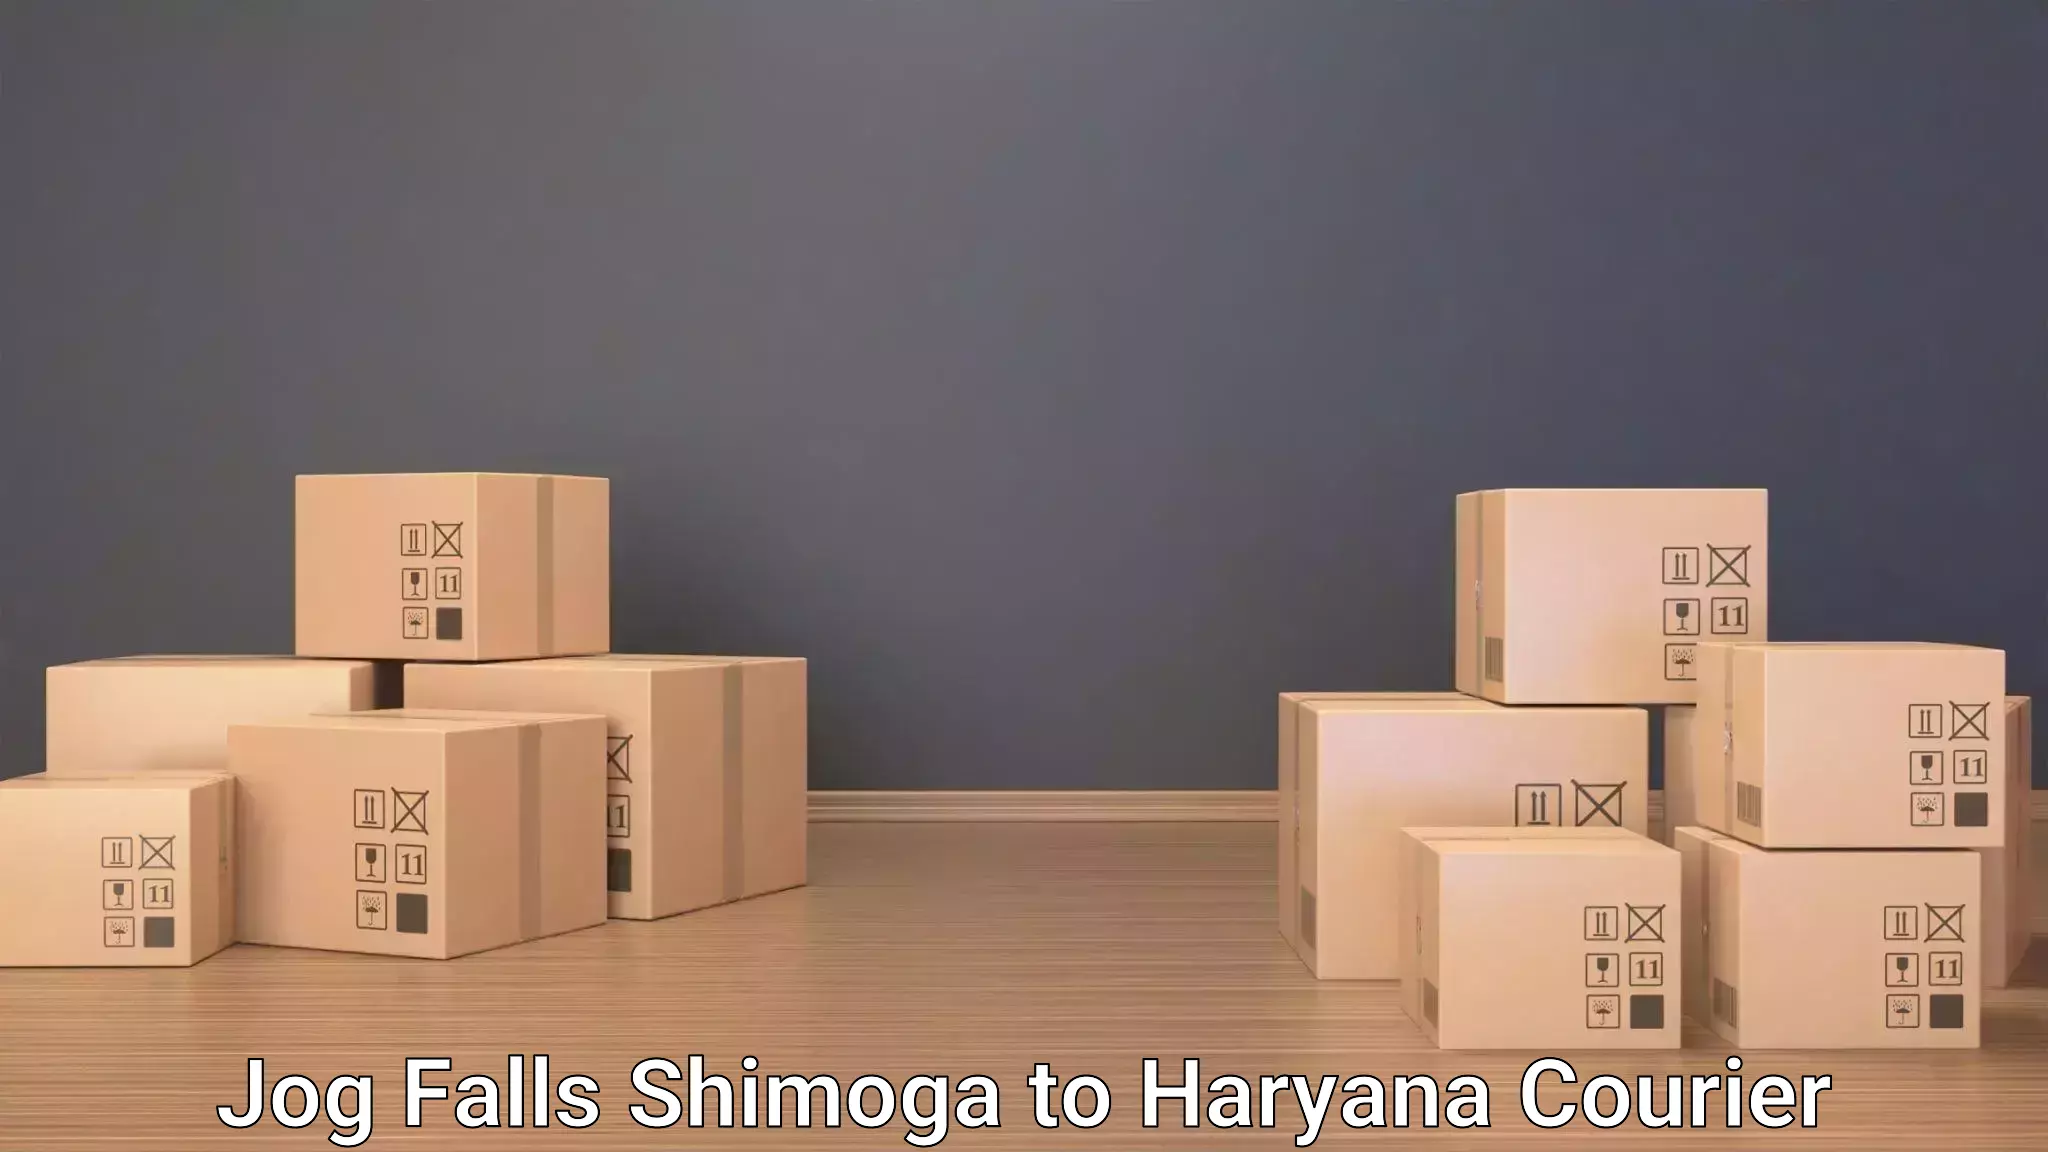 Luggage delivery app Jog Falls Shimoga to NCR Haryana